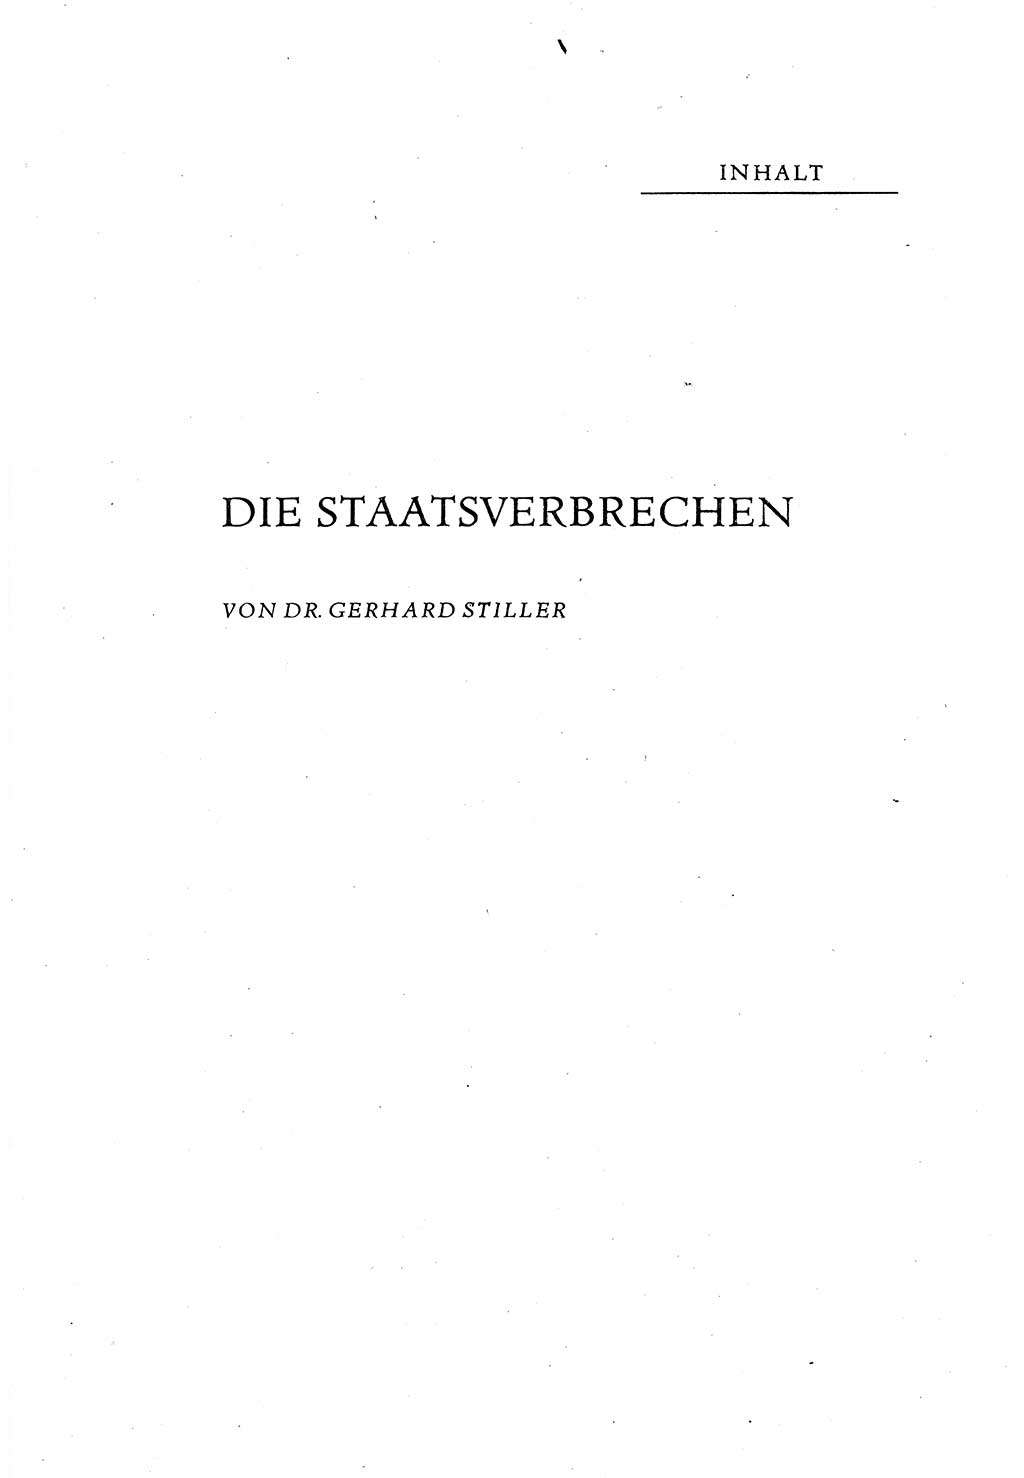 Beiträge zum Strafrecht [Deutsche Demokratische Republik (DDR)], Staatsverbrechen 1959, Seite 3 (Beitr. Strafr. DDR St.-Verbr. 1959, S. 3)